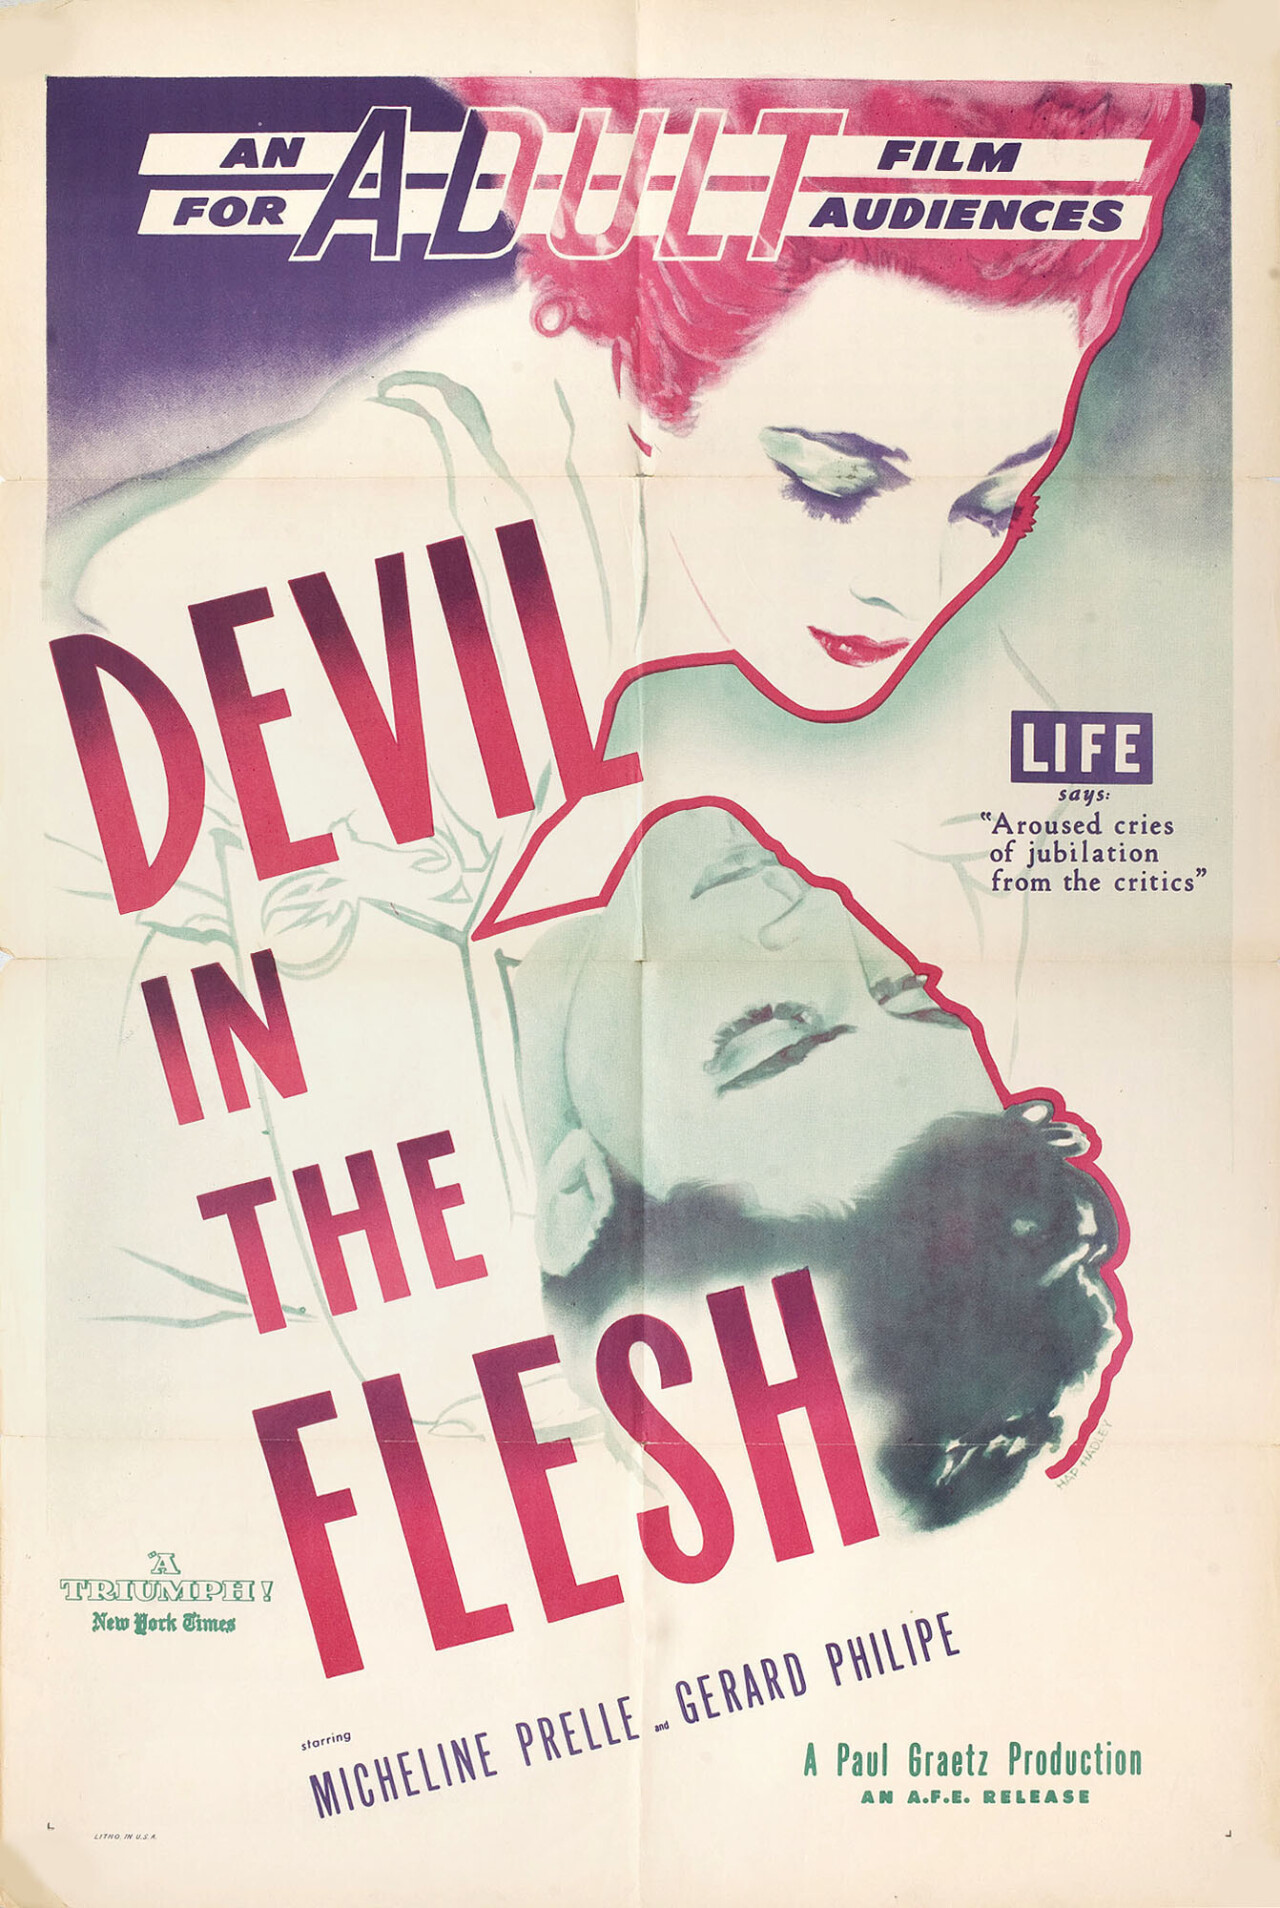 Дьявол во плоти (Devil in the Flesh, 1947), режиссёр Клод Отан-Лара, американский постер к фильму, автор Хэп Хэдли (графический дизайн, 1948 год)